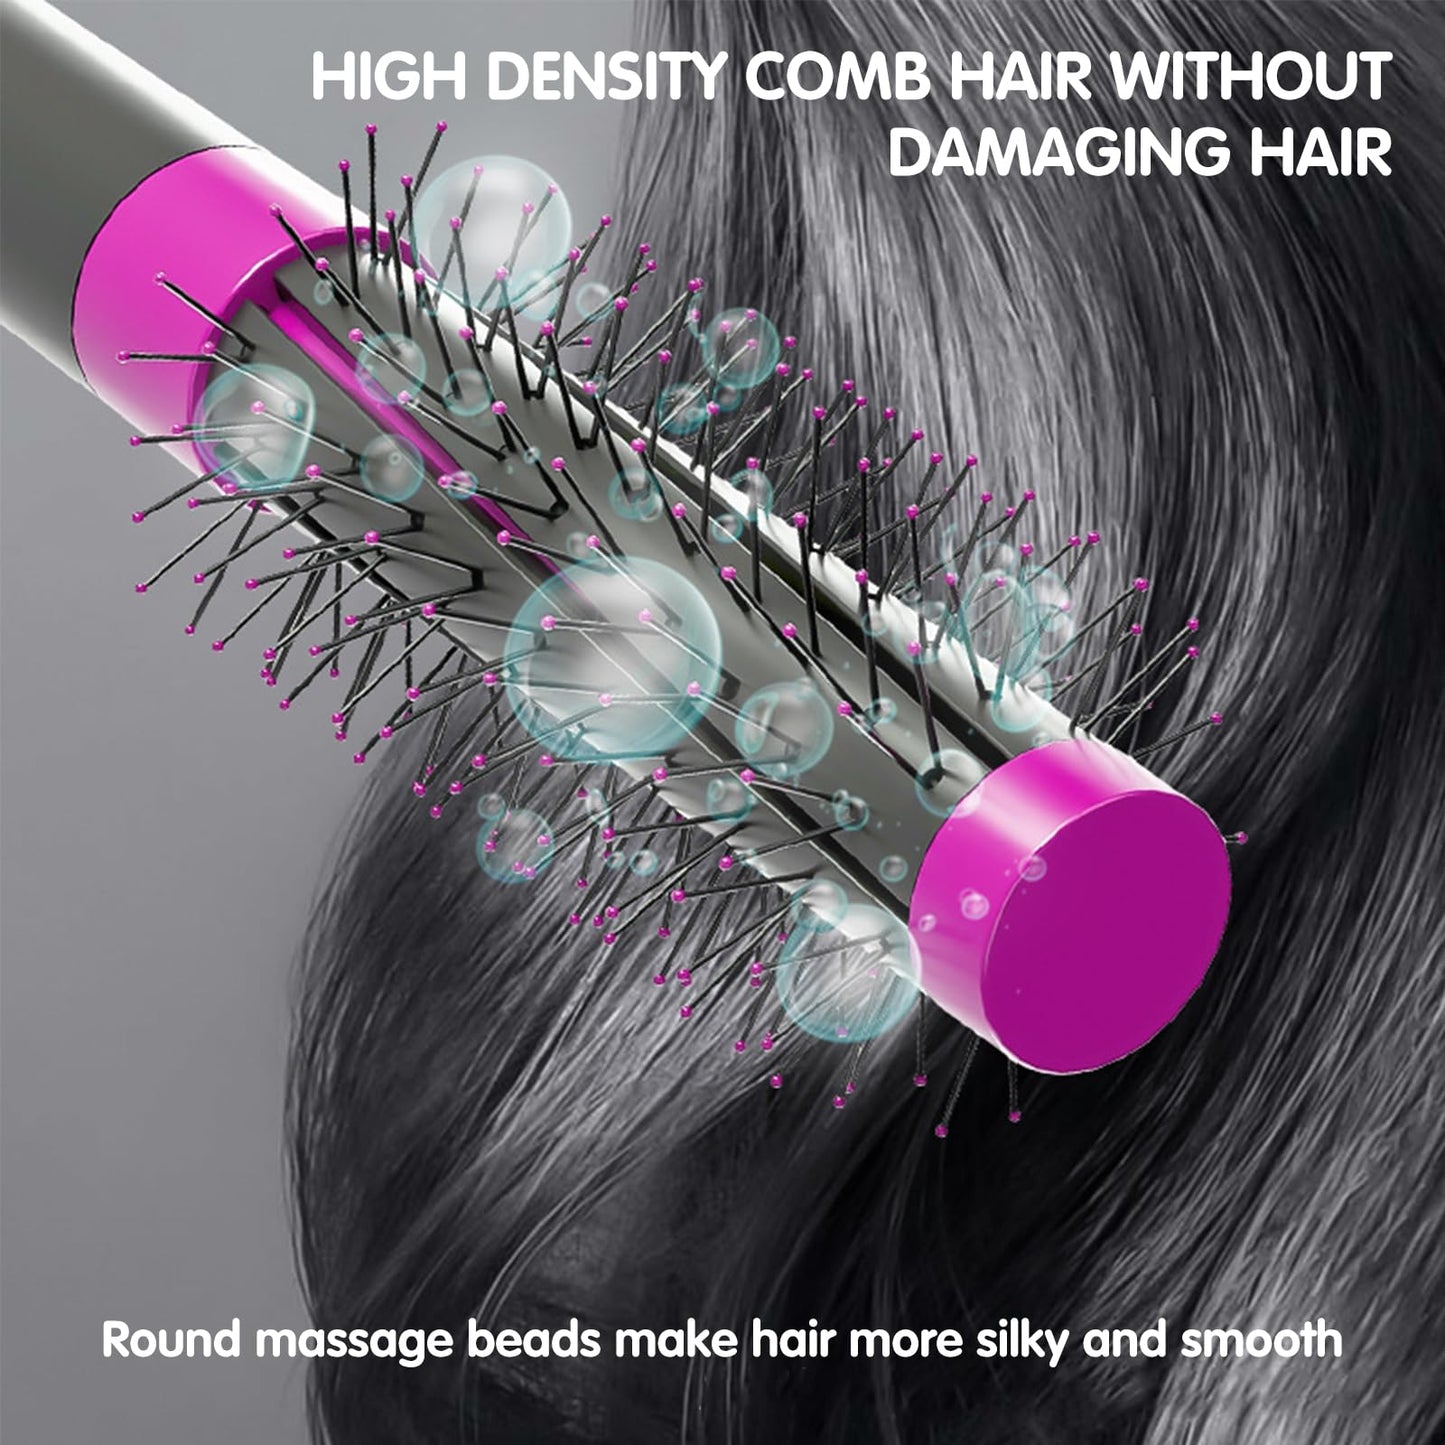 VAVOLO Round Hair Brush–Multipurpose Styling Curling Iron Brush, Helical Blade Styling Brush, Hair Crimper for Women, Suitable for Long Hair, Short Hair, Wet or Dry Hair